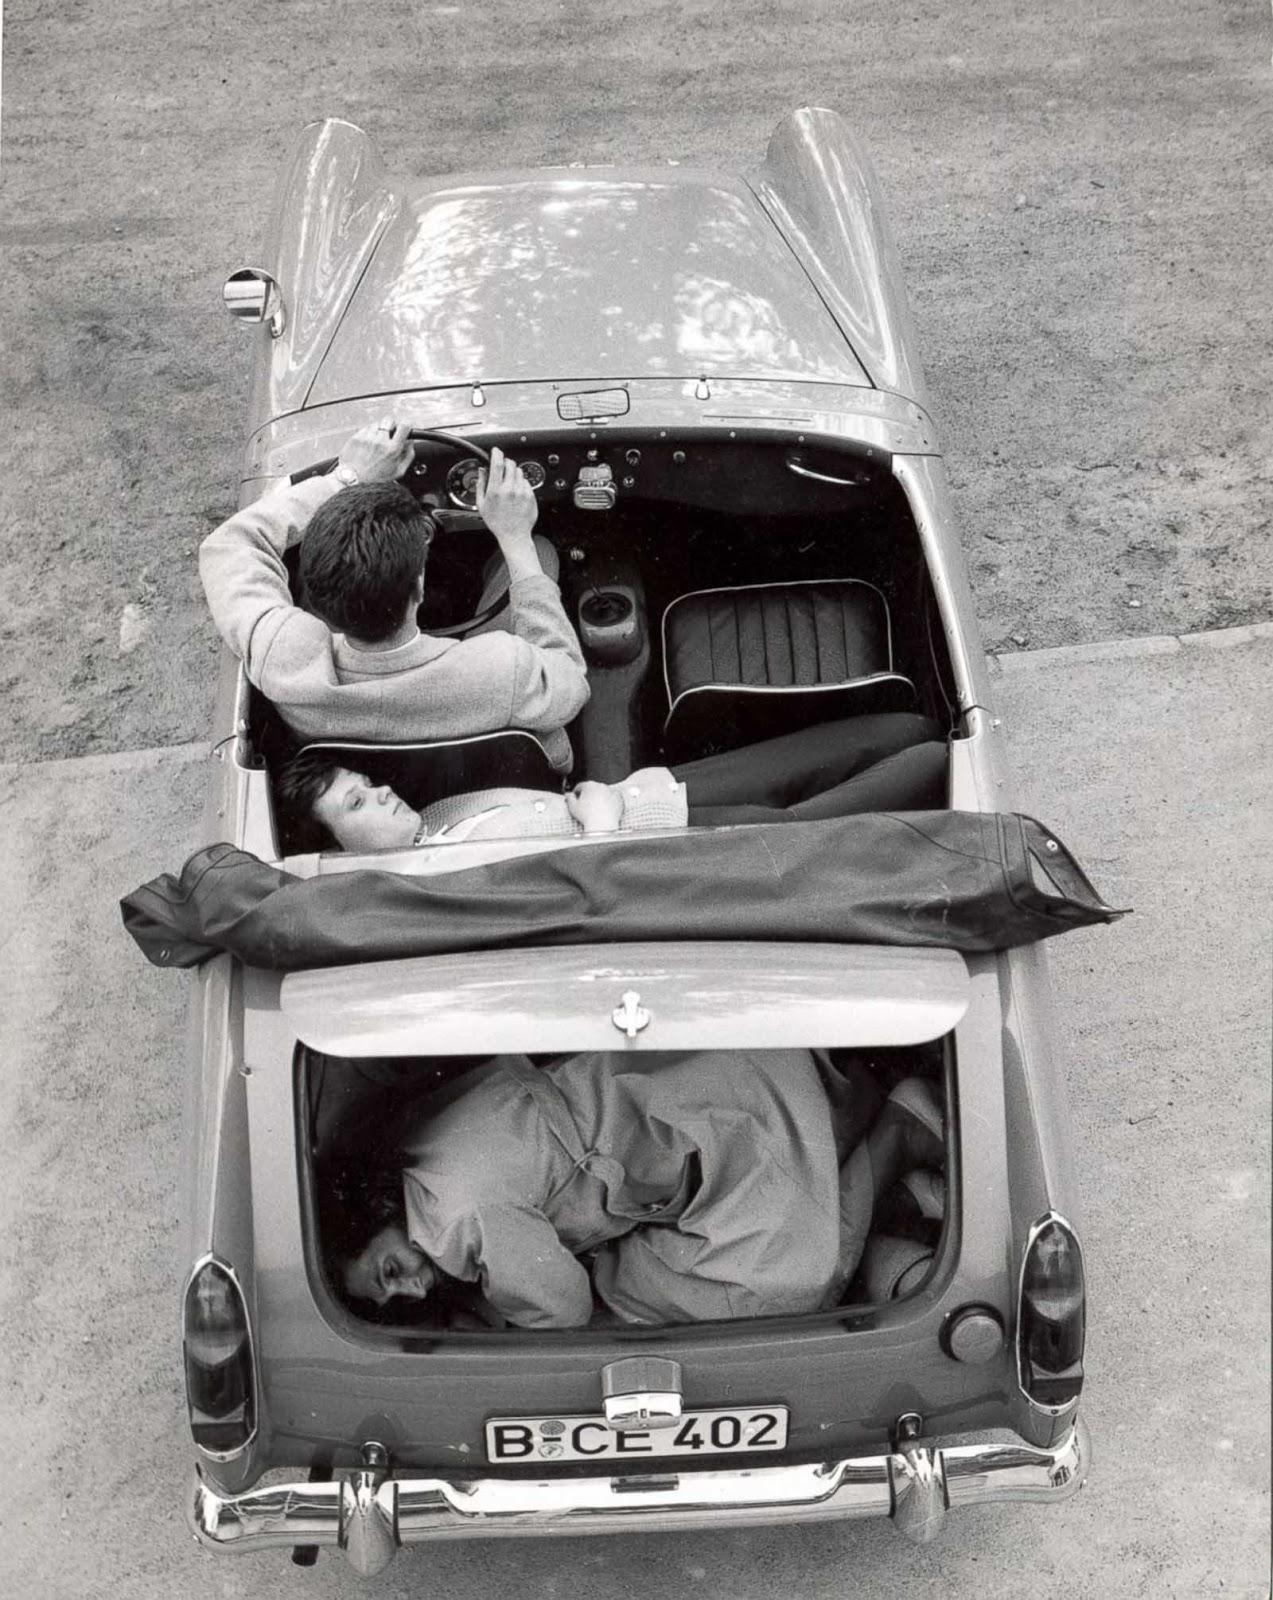 Défauts de Heinz Meixner de l'Allemagne de l'Est en passant par Checkpoint Charlie après avoir enlevé son pare-brise, 1963